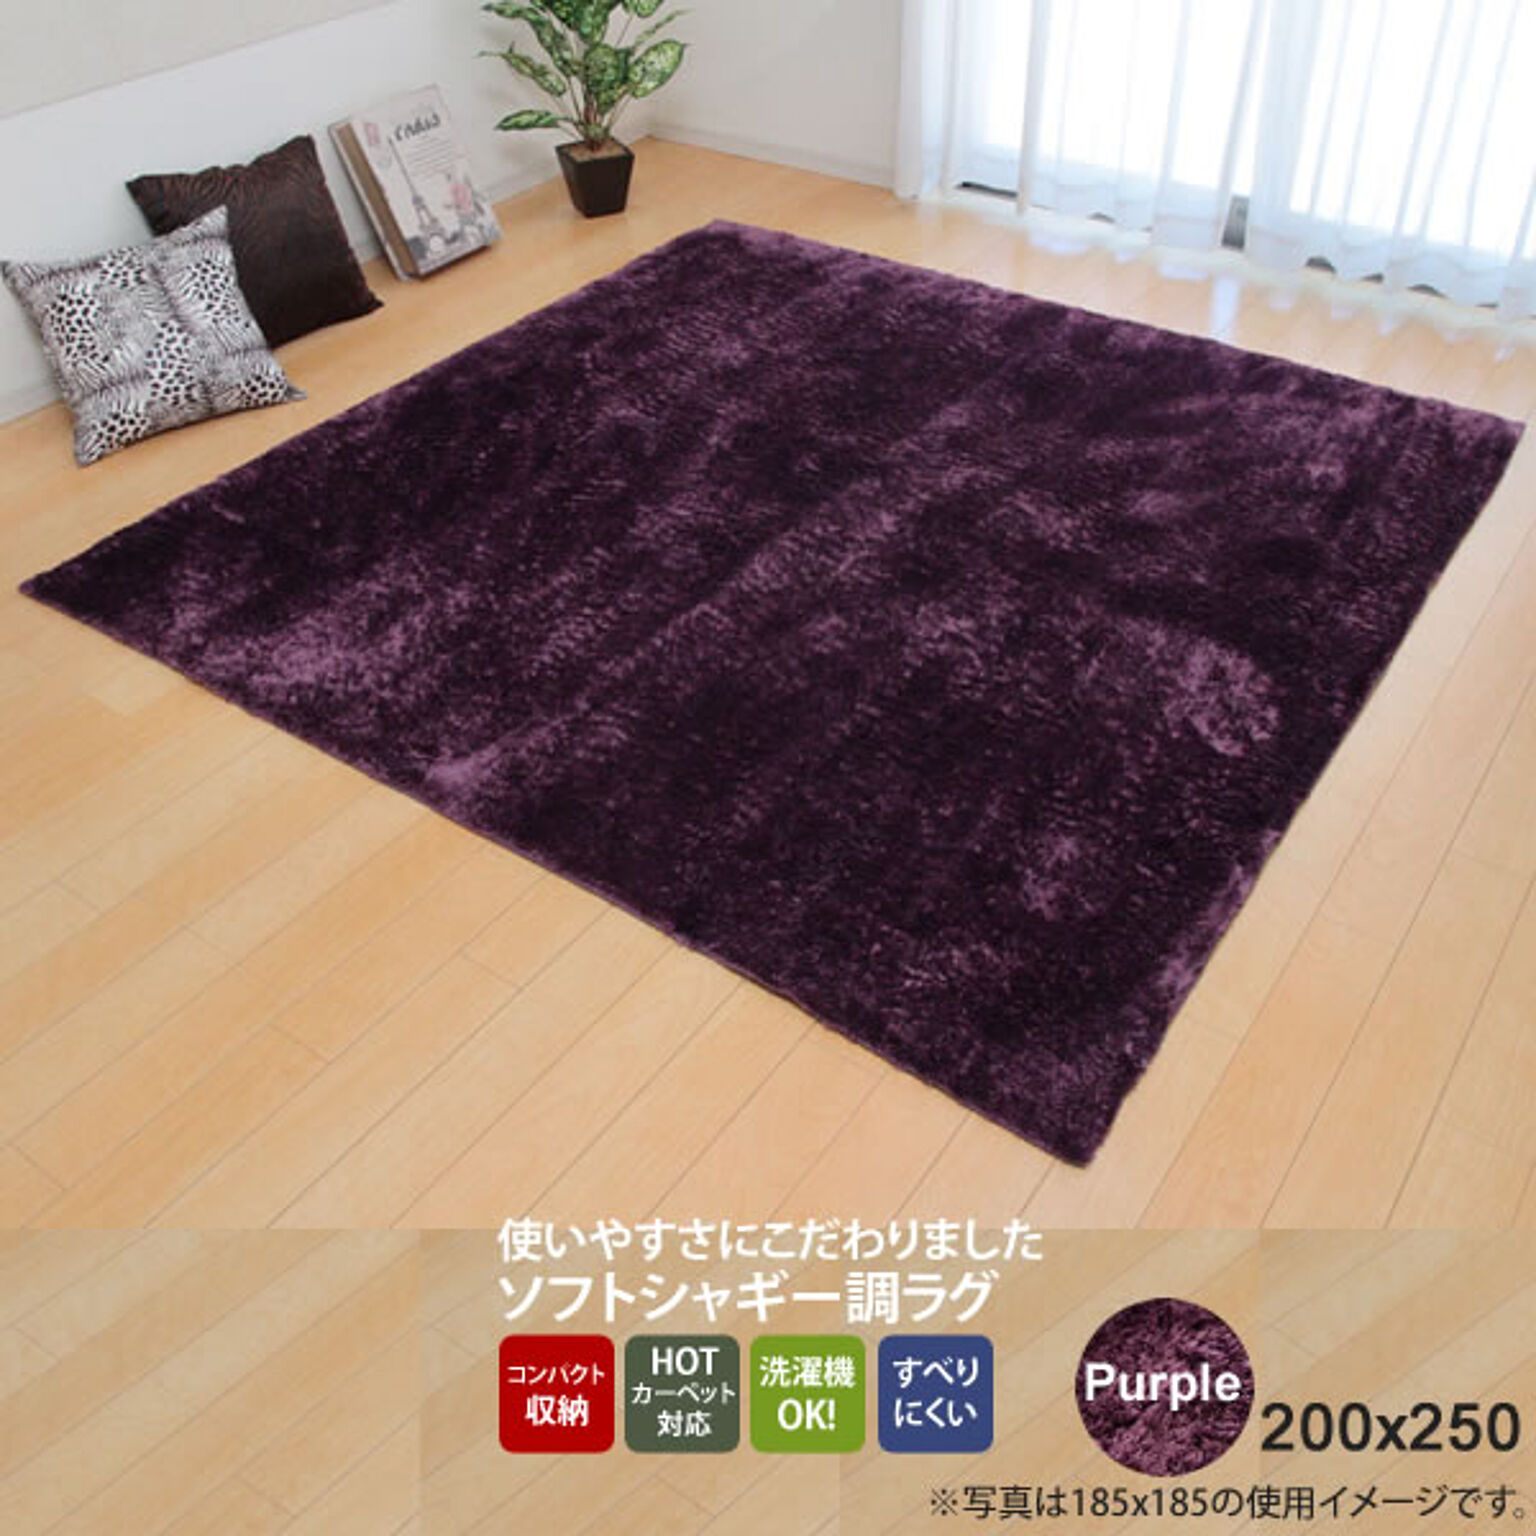 パープル(purple) 200×250 ★ ラグ カーペット 3畳 無地 シャギー調 選べる7色 ホットカーペット対応  